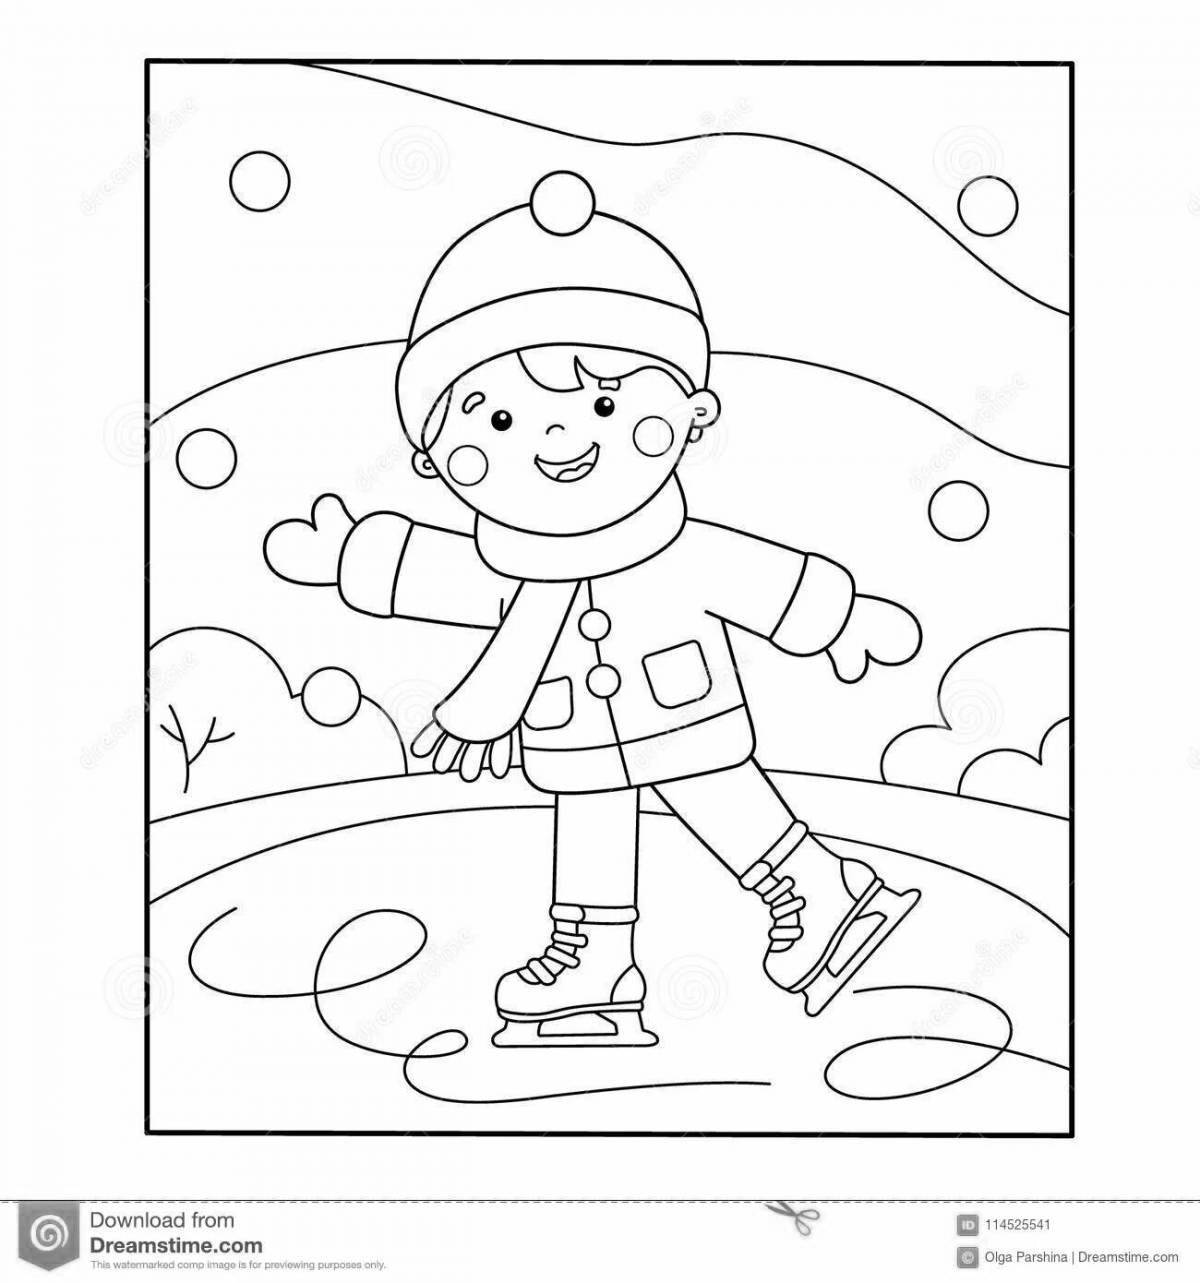 Анимированная страница раскраски зимних видов спорта для детского сада